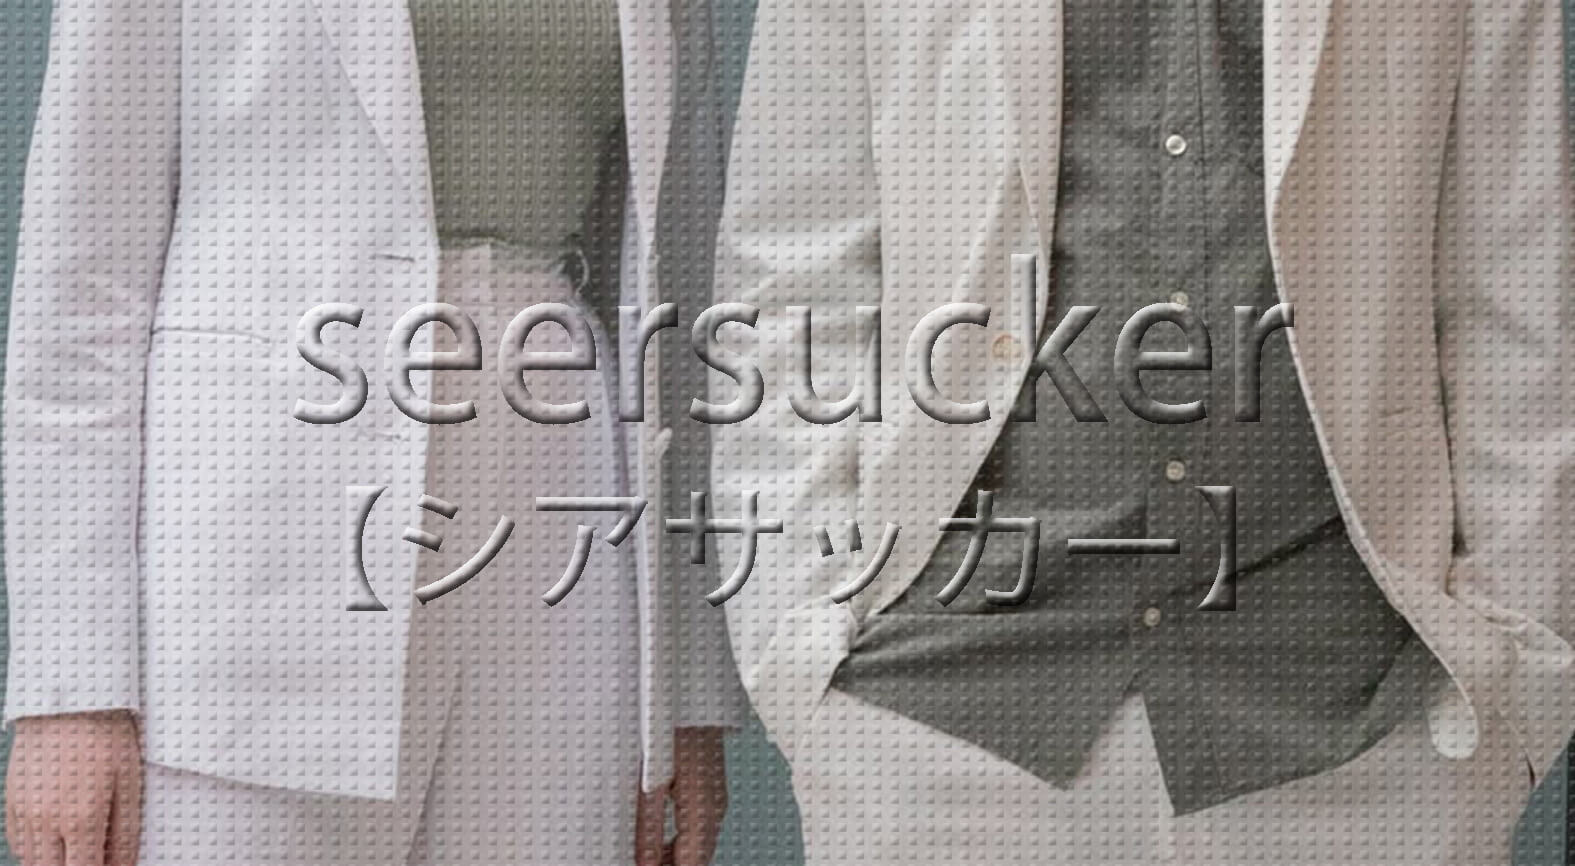 seersucker-fabric